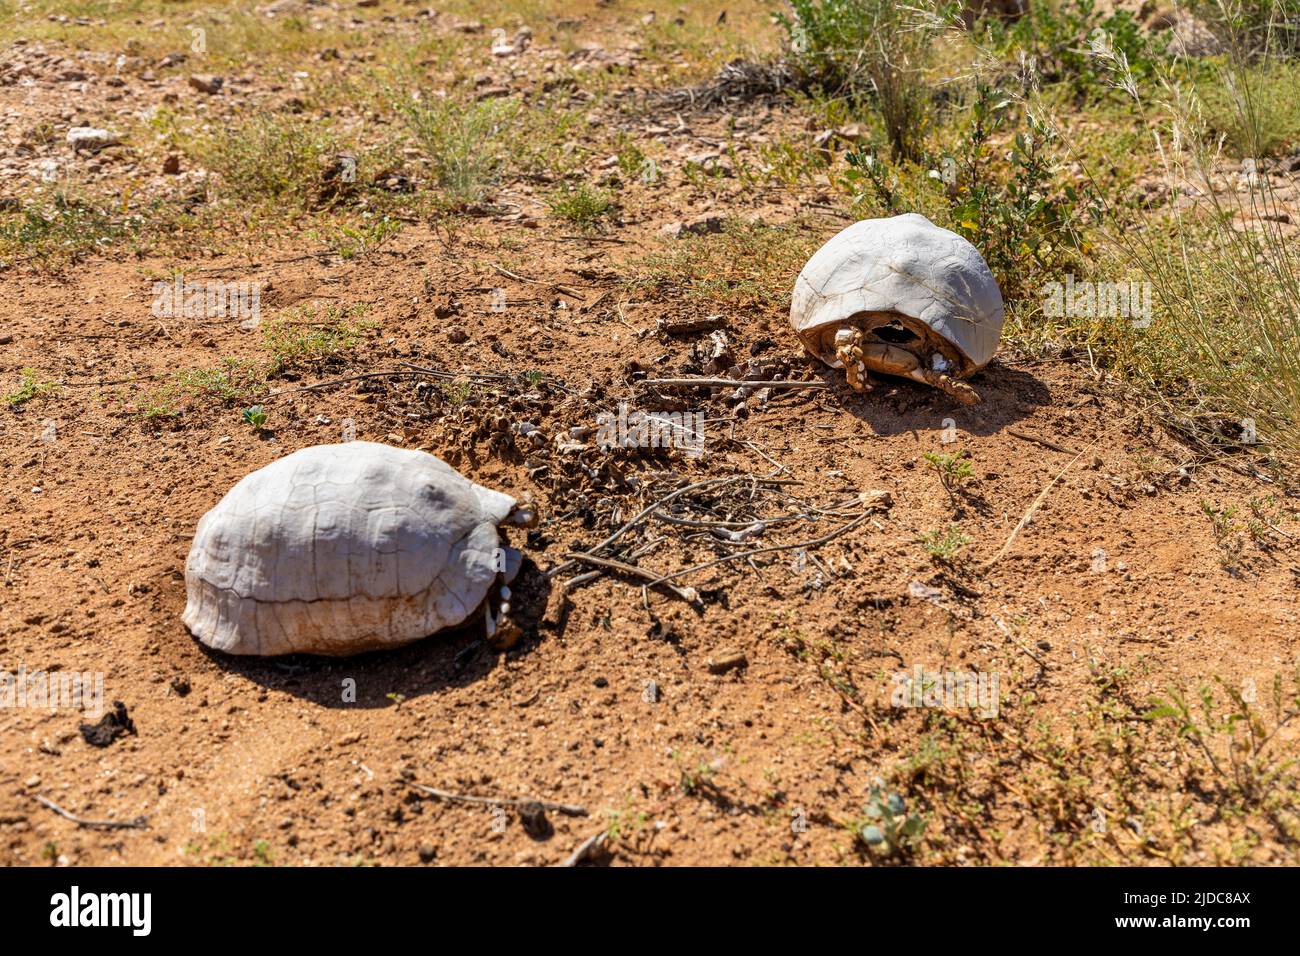 Selektiver Fokus auf eine zwei tote Schildkröte in einem Wüstengebiet. Die Schildkröte im Hintergrund rechts ist im Fokus. Die Schalen sind aufgrund der Belichtung weiß Stockfoto